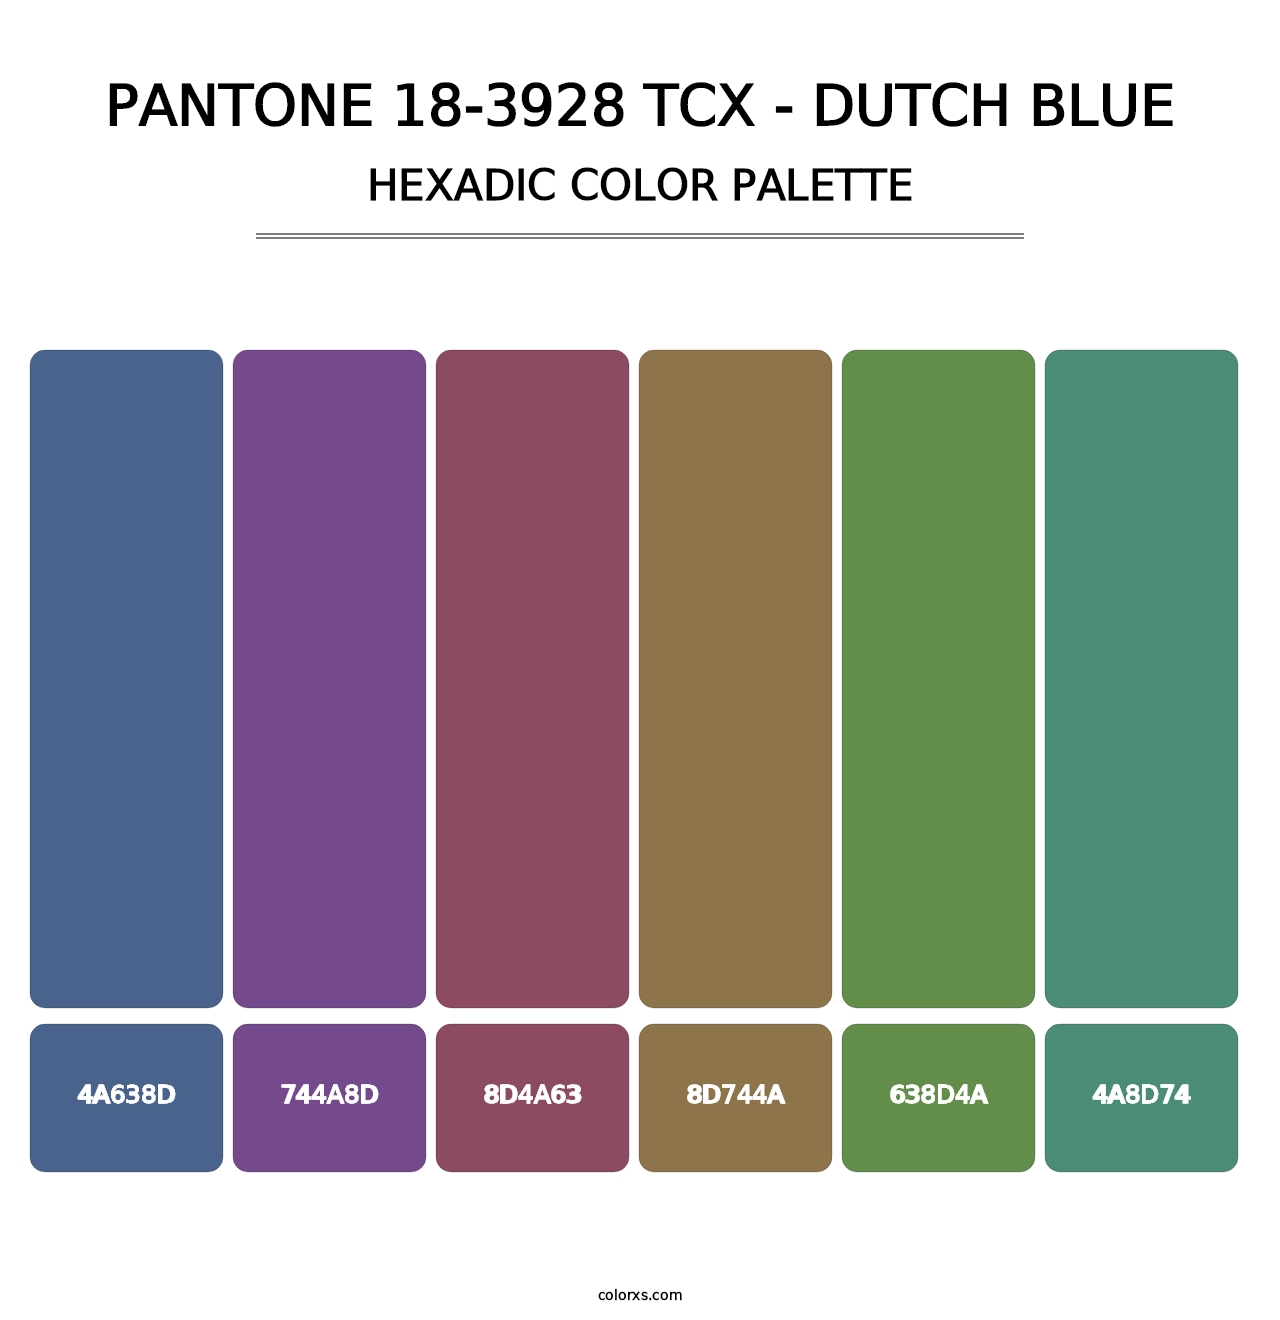 PANTONE 18-3928 TCX - Dutch Blue - Hexadic Color Palette